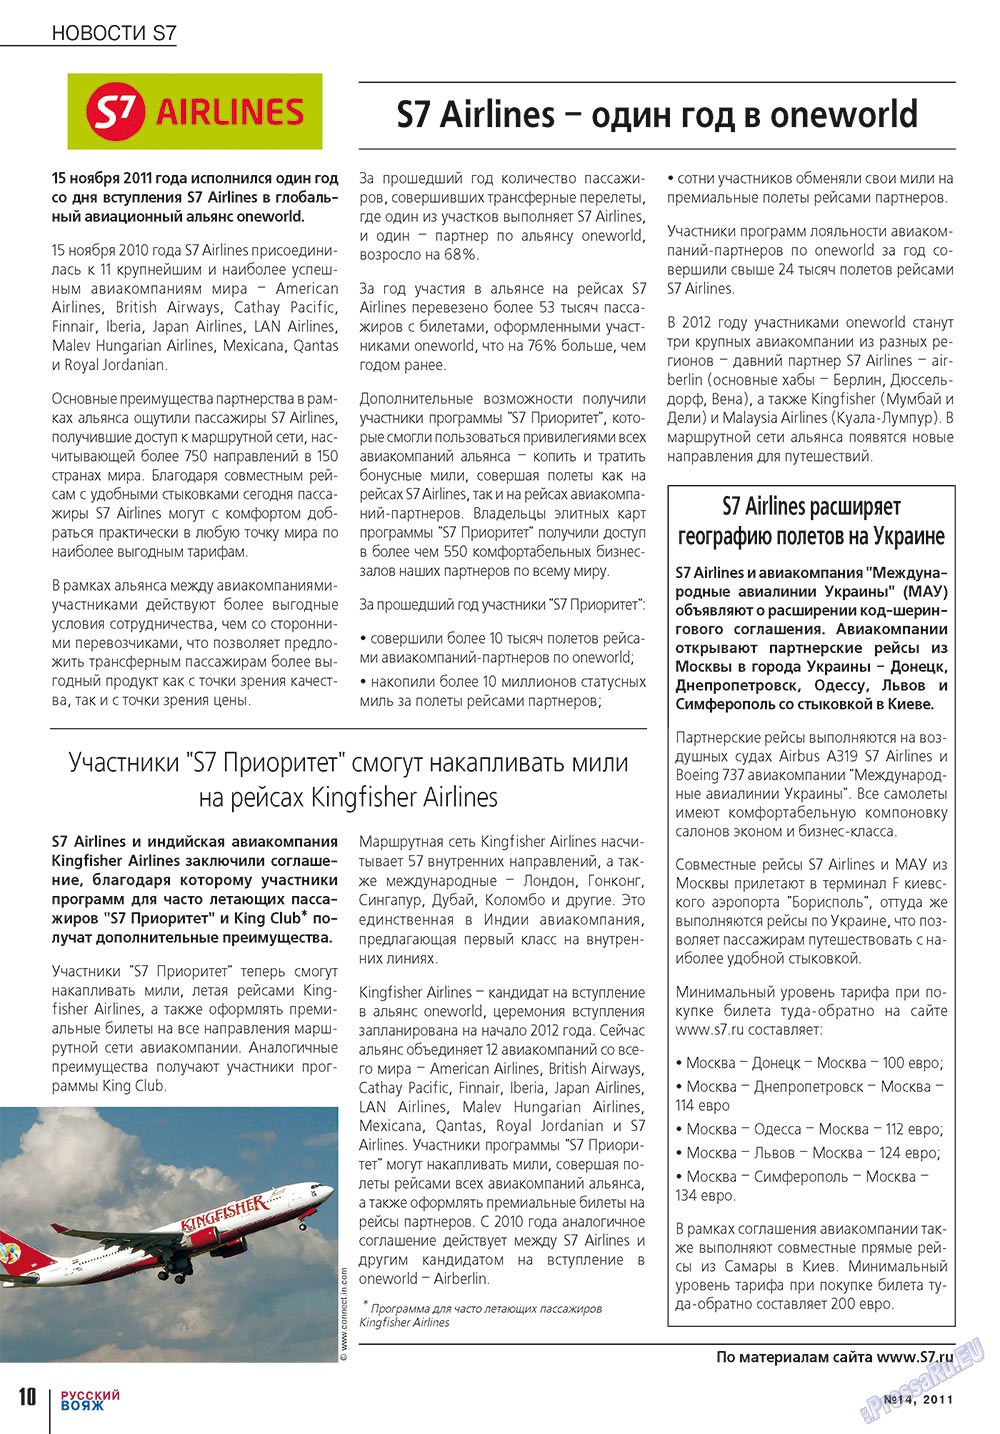 Русский вояж (журнал). 2011 год, номер 14, стр. 10